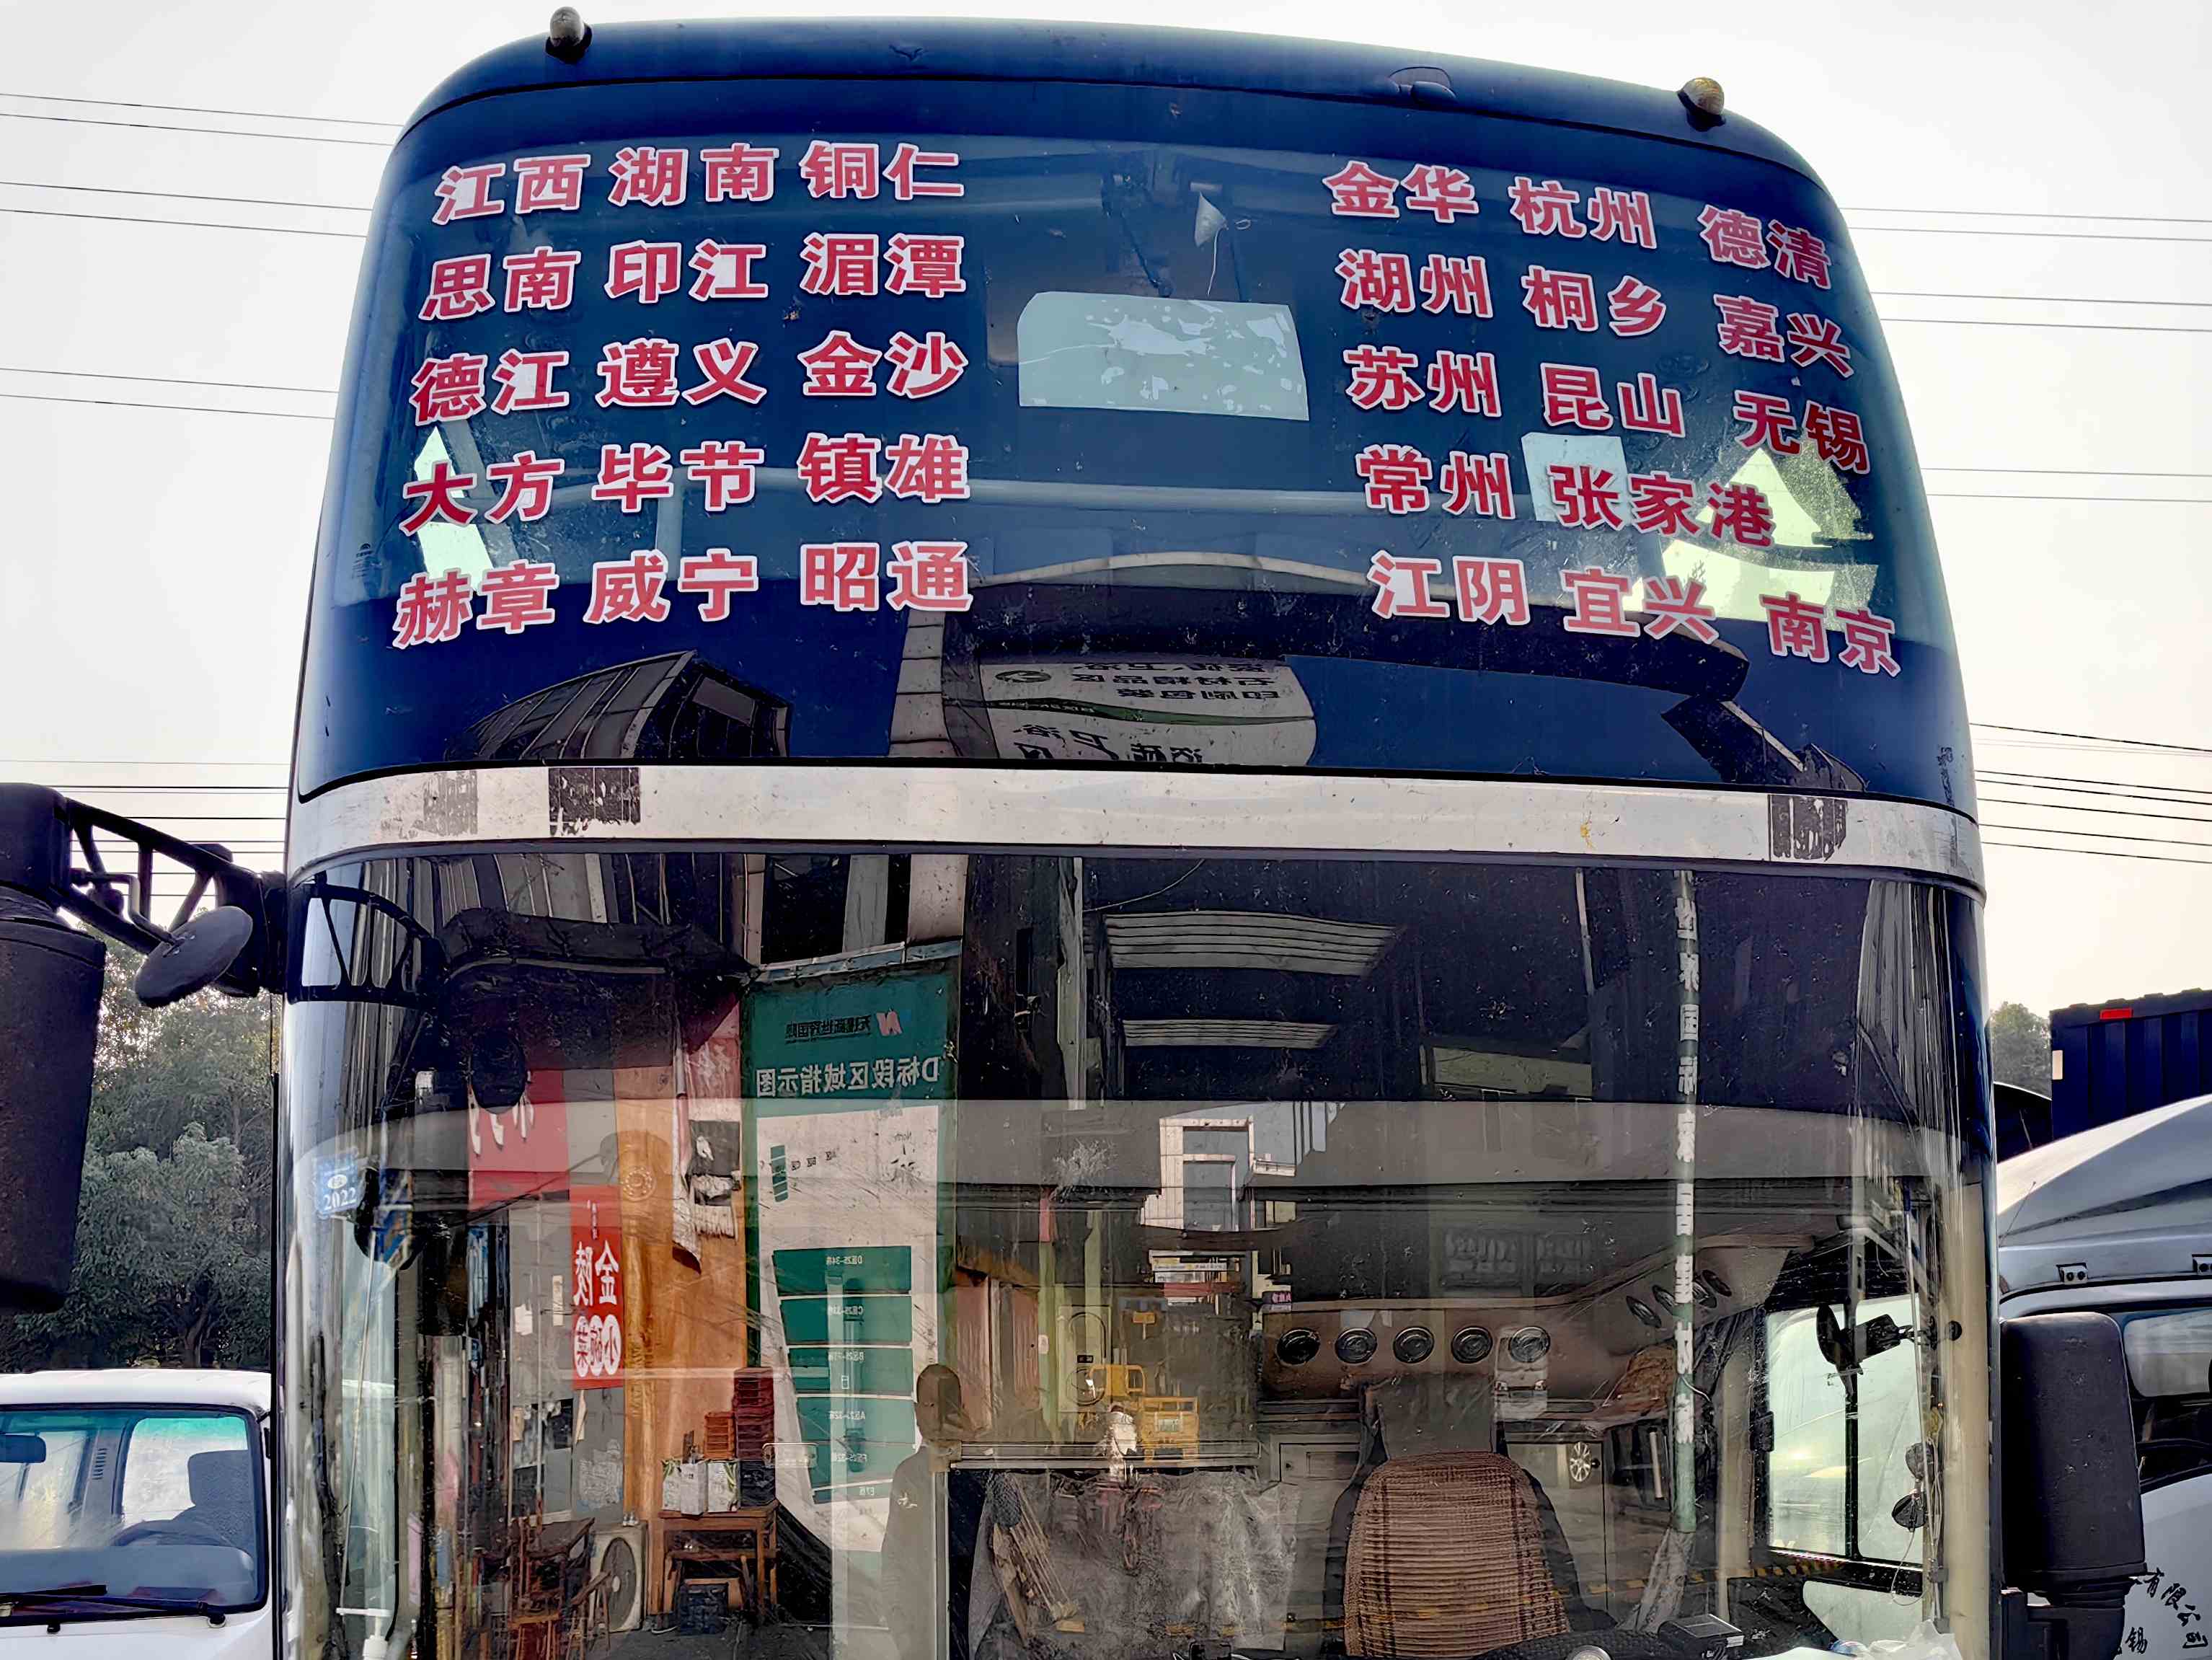 今日客运/兴化到丘北汽车班次查询表/今日客运一览表/客车